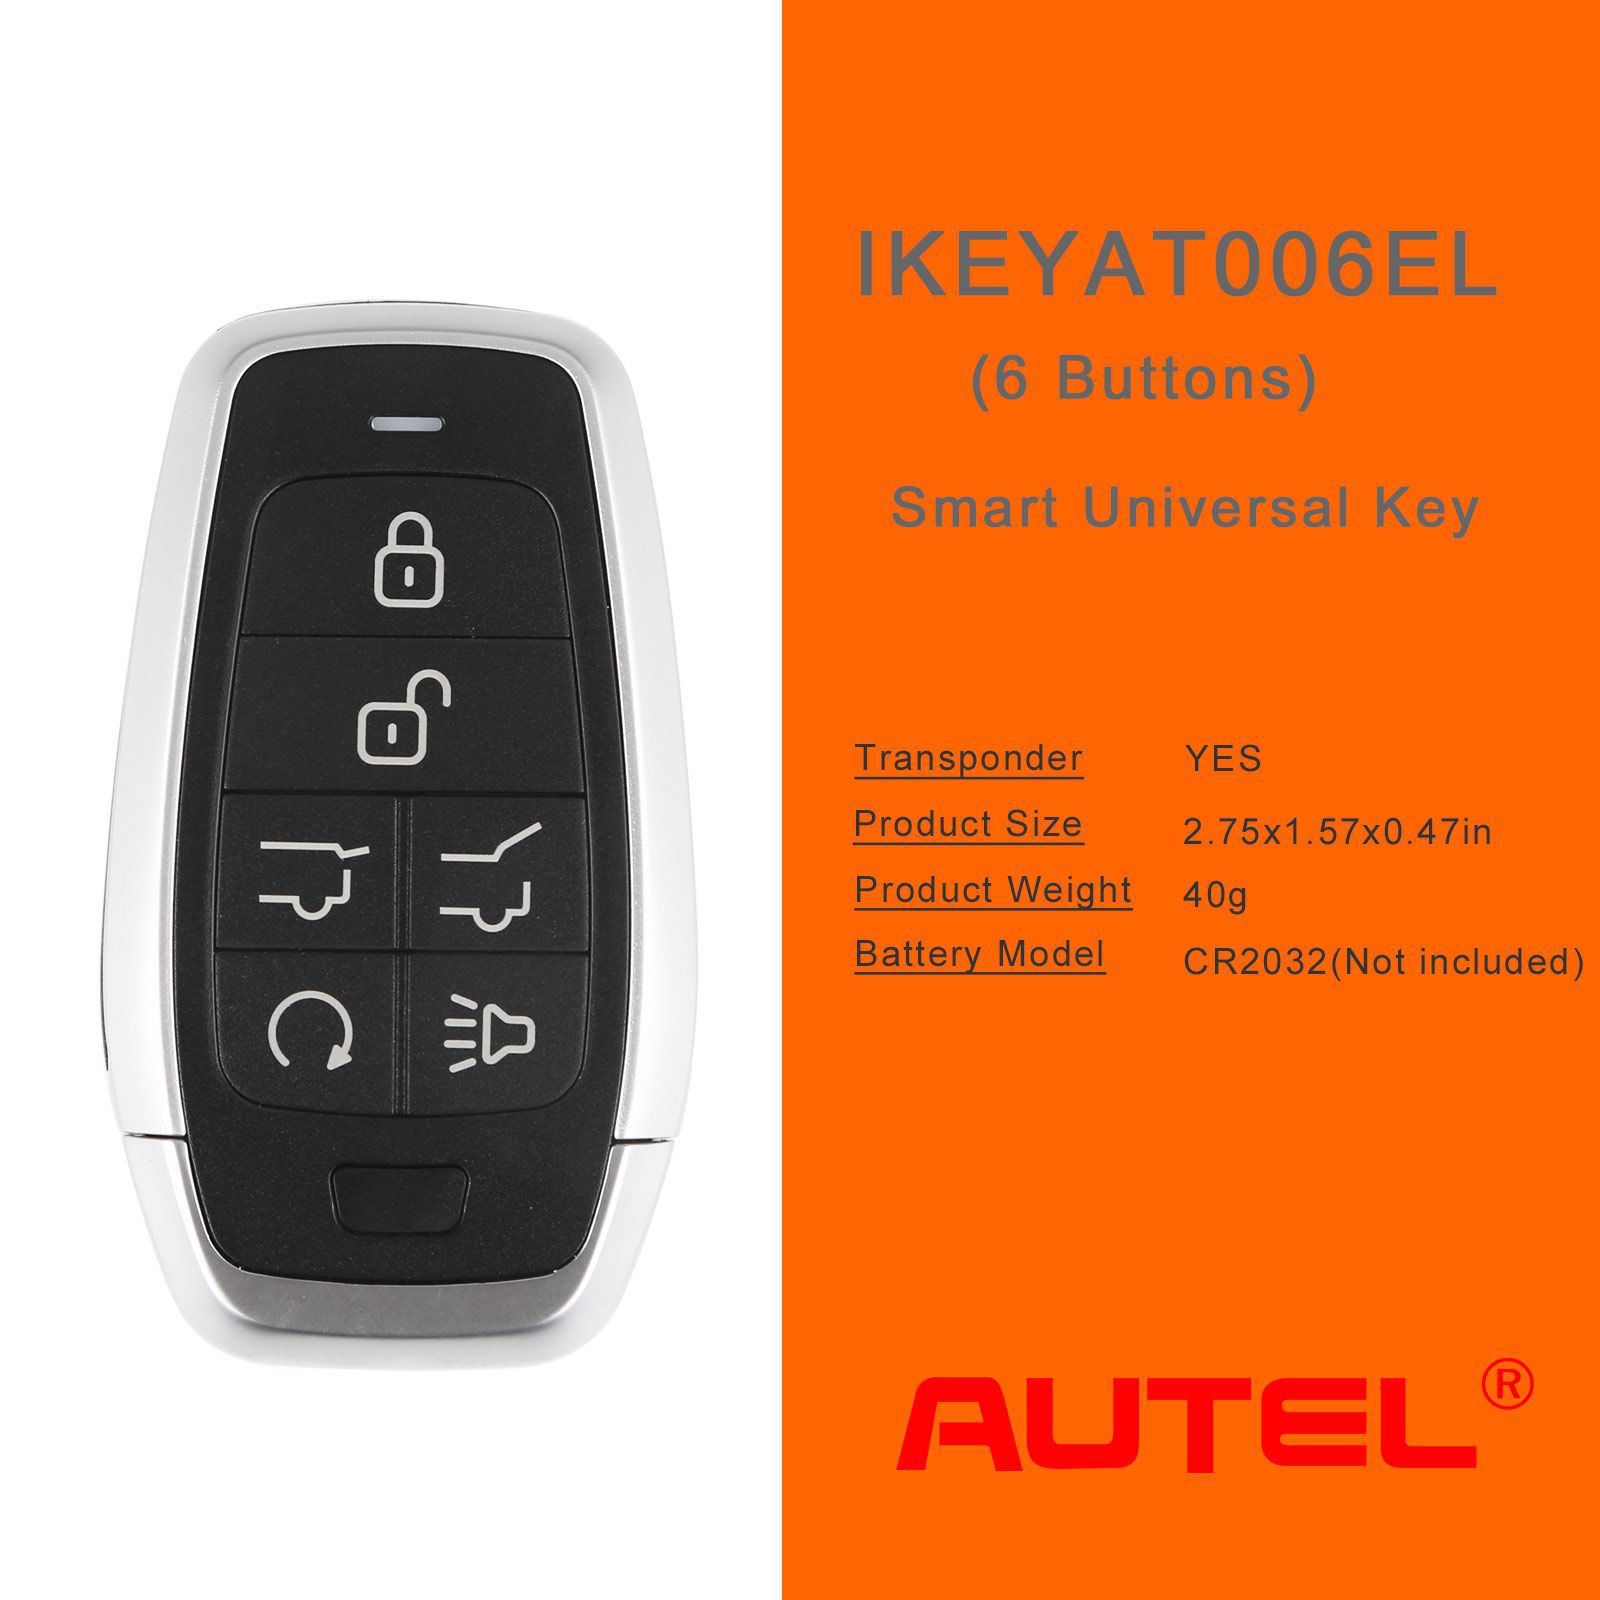 Autel ikeyat006el 6 boutons clés intelligentes universelles indépendantes 5pcs / lot